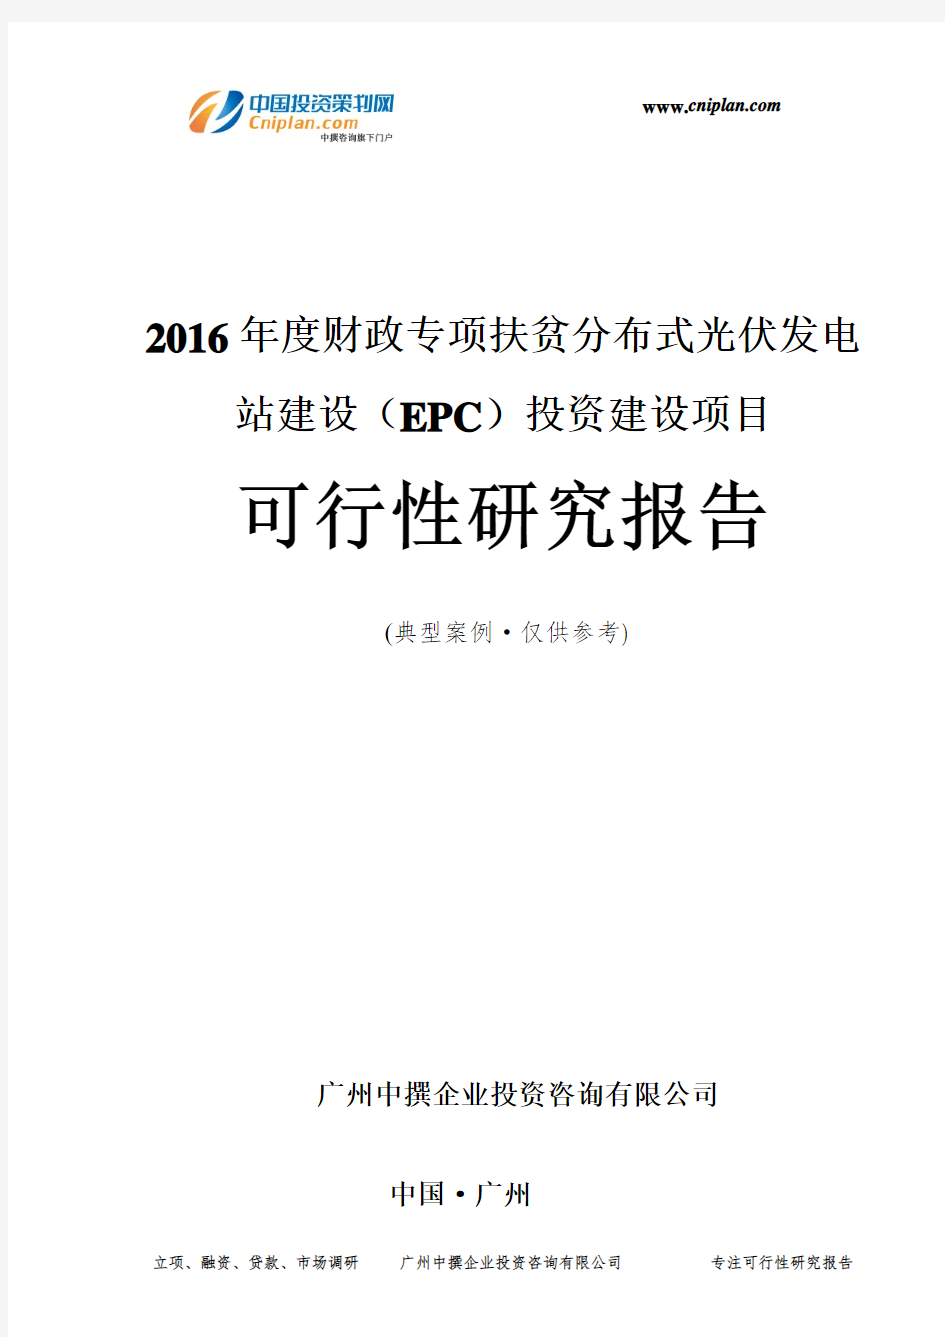 2016年度财政专项扶贫分布式光伏发电站建设(EPC)投资建设项目可行性研究报告-广州中撰咨询